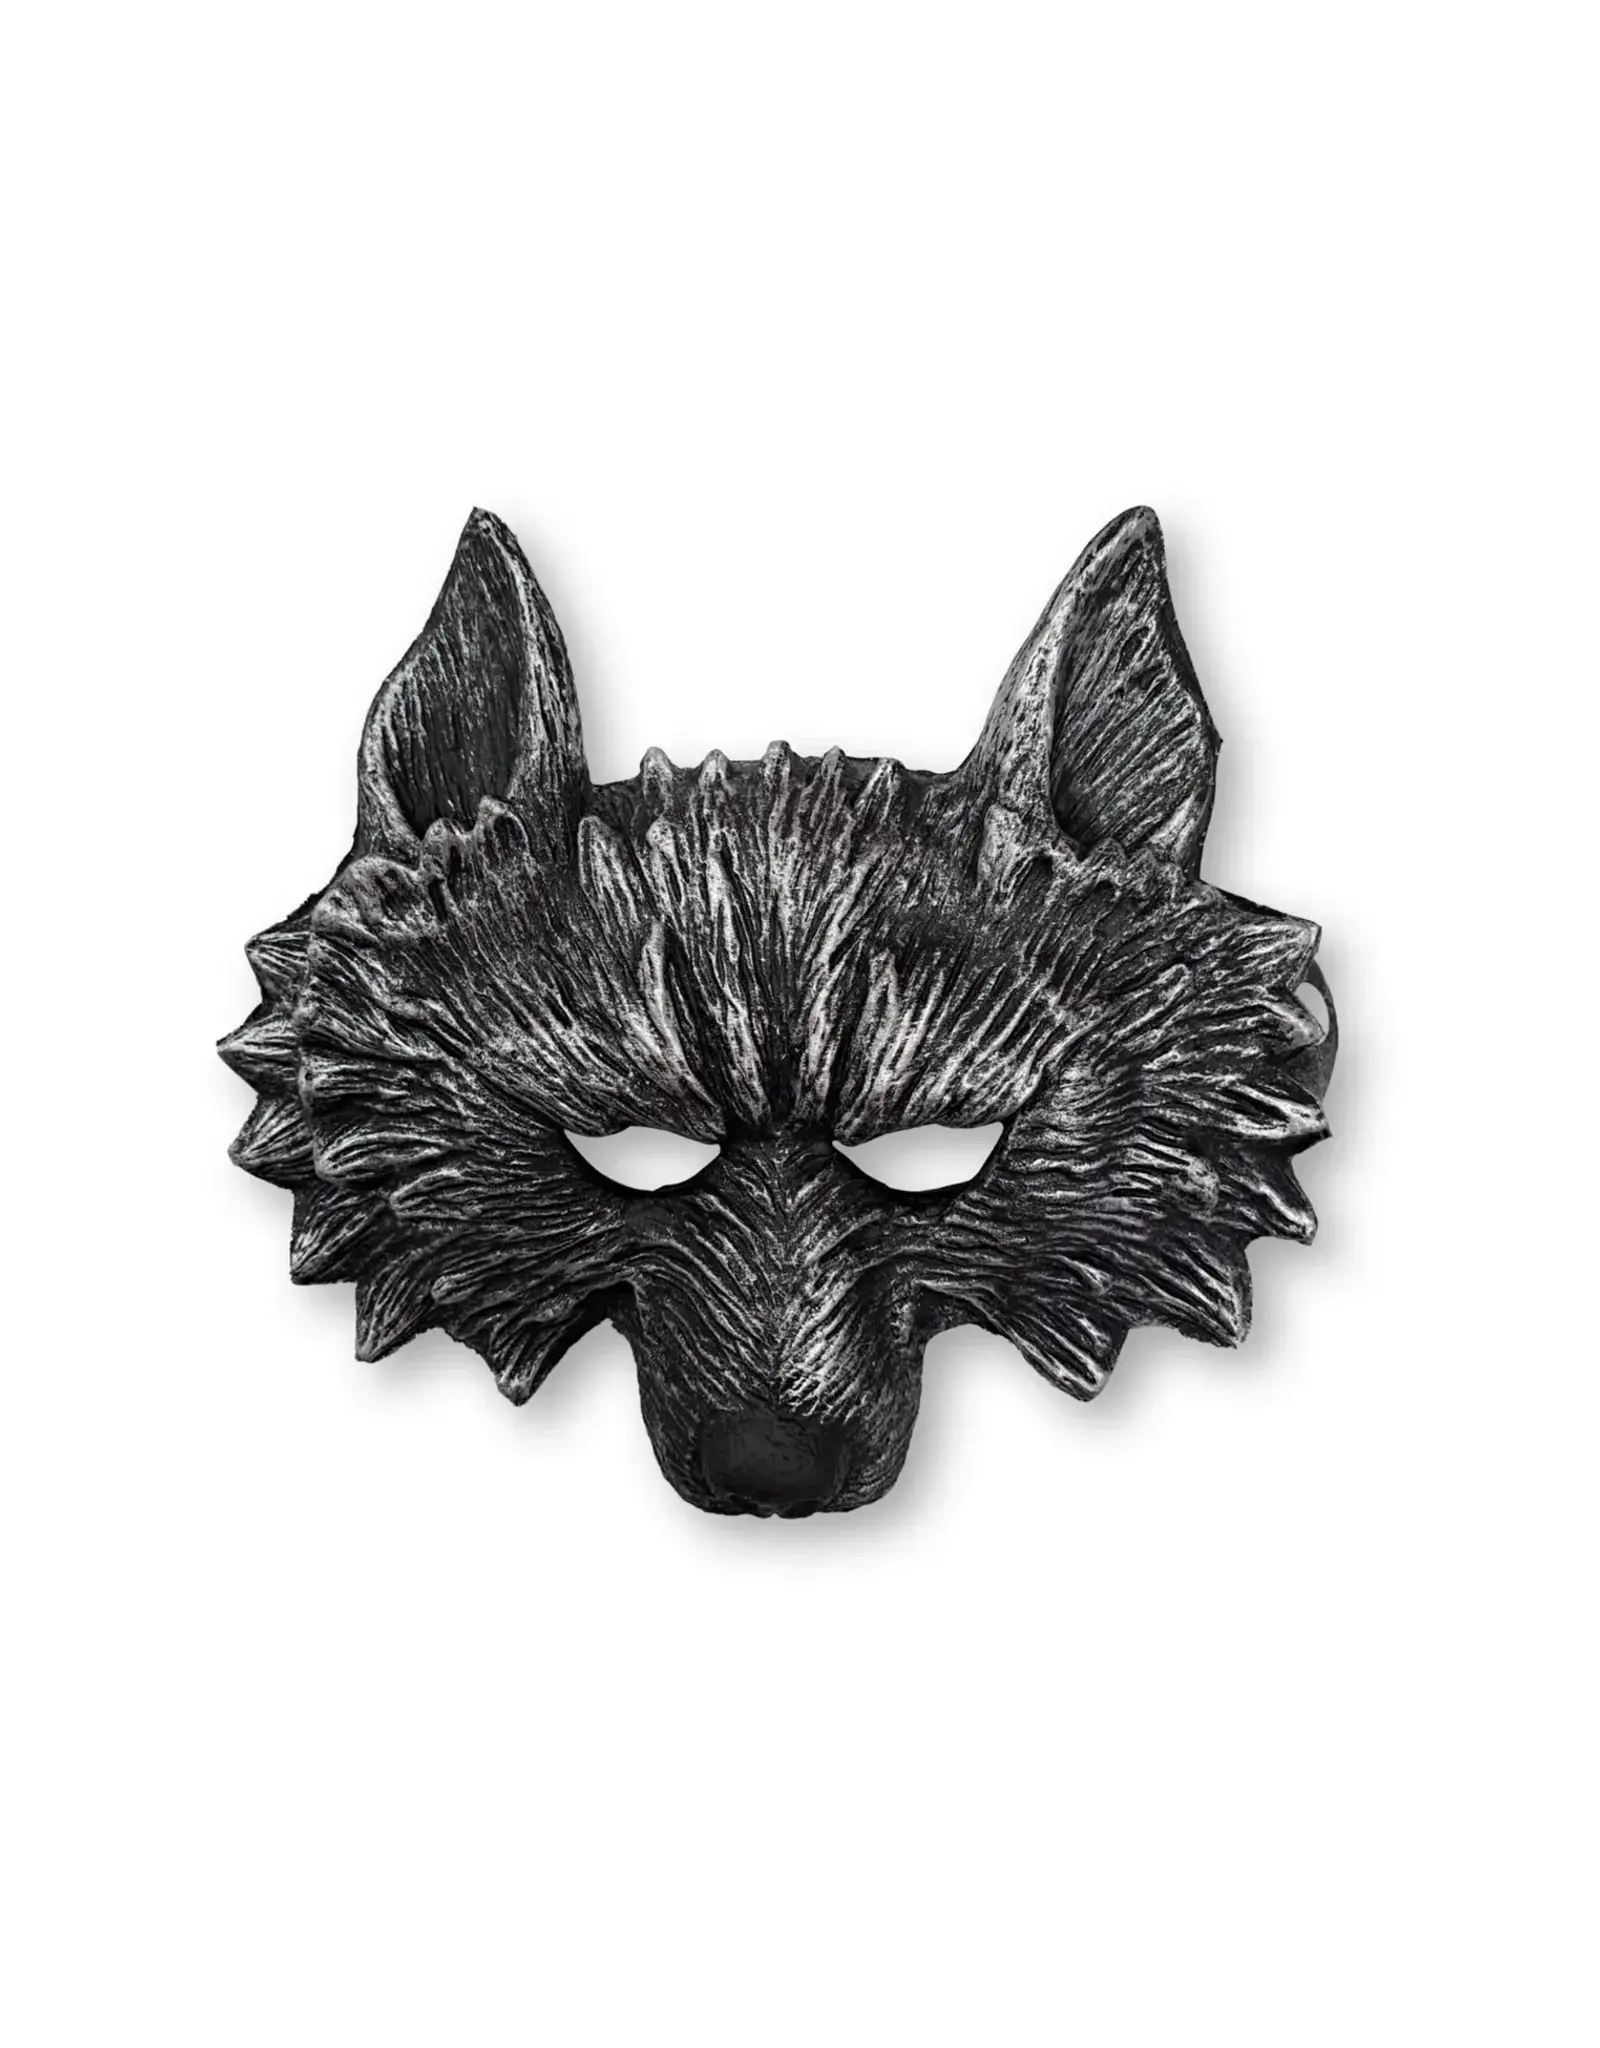 Great Pretenders Werewolf Mask Black